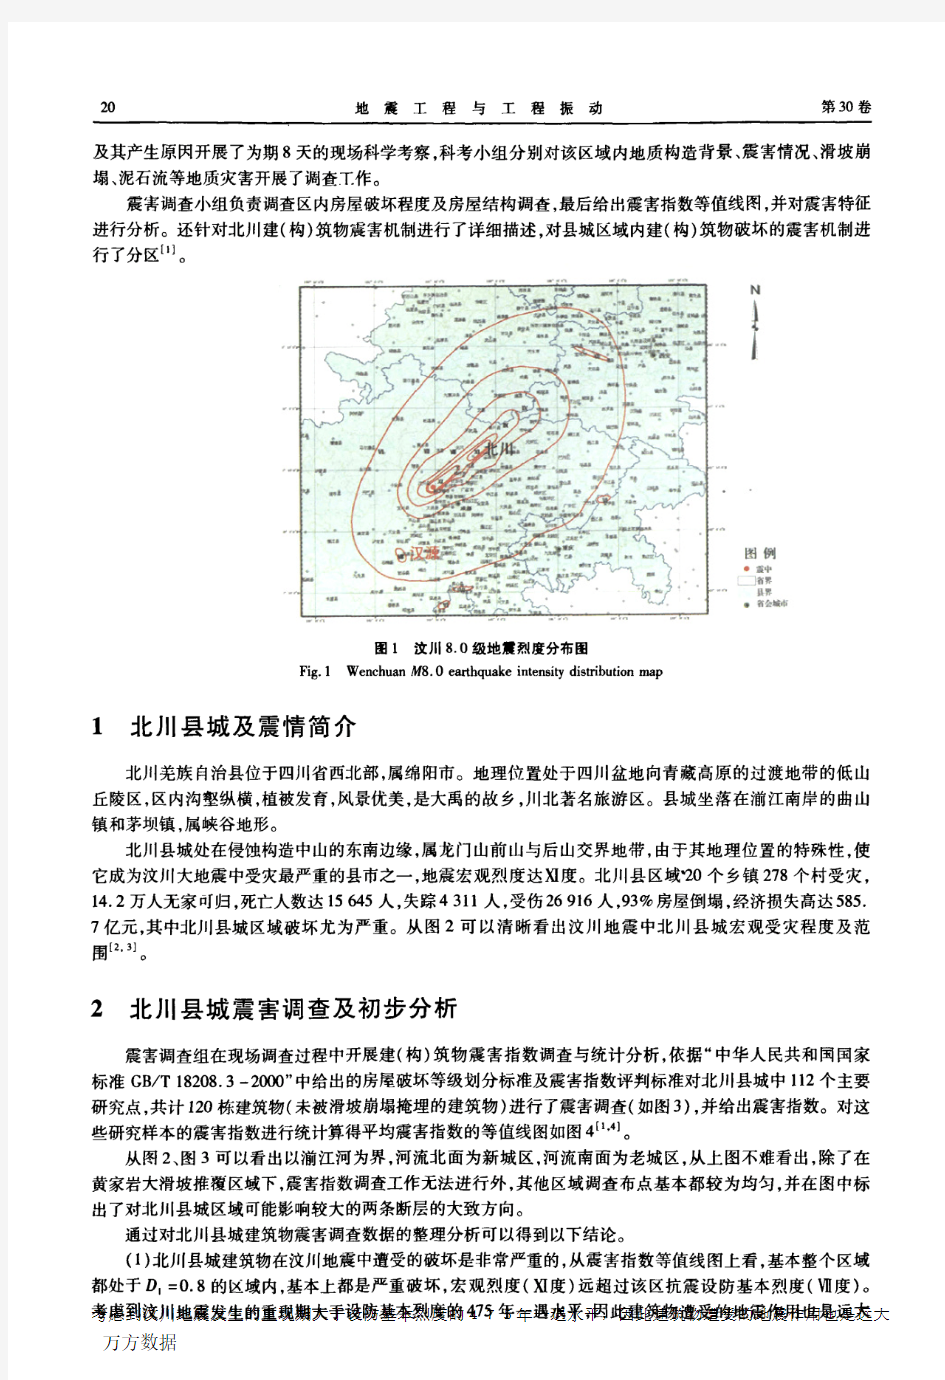 汶川地震北川县城建筑物震害分析